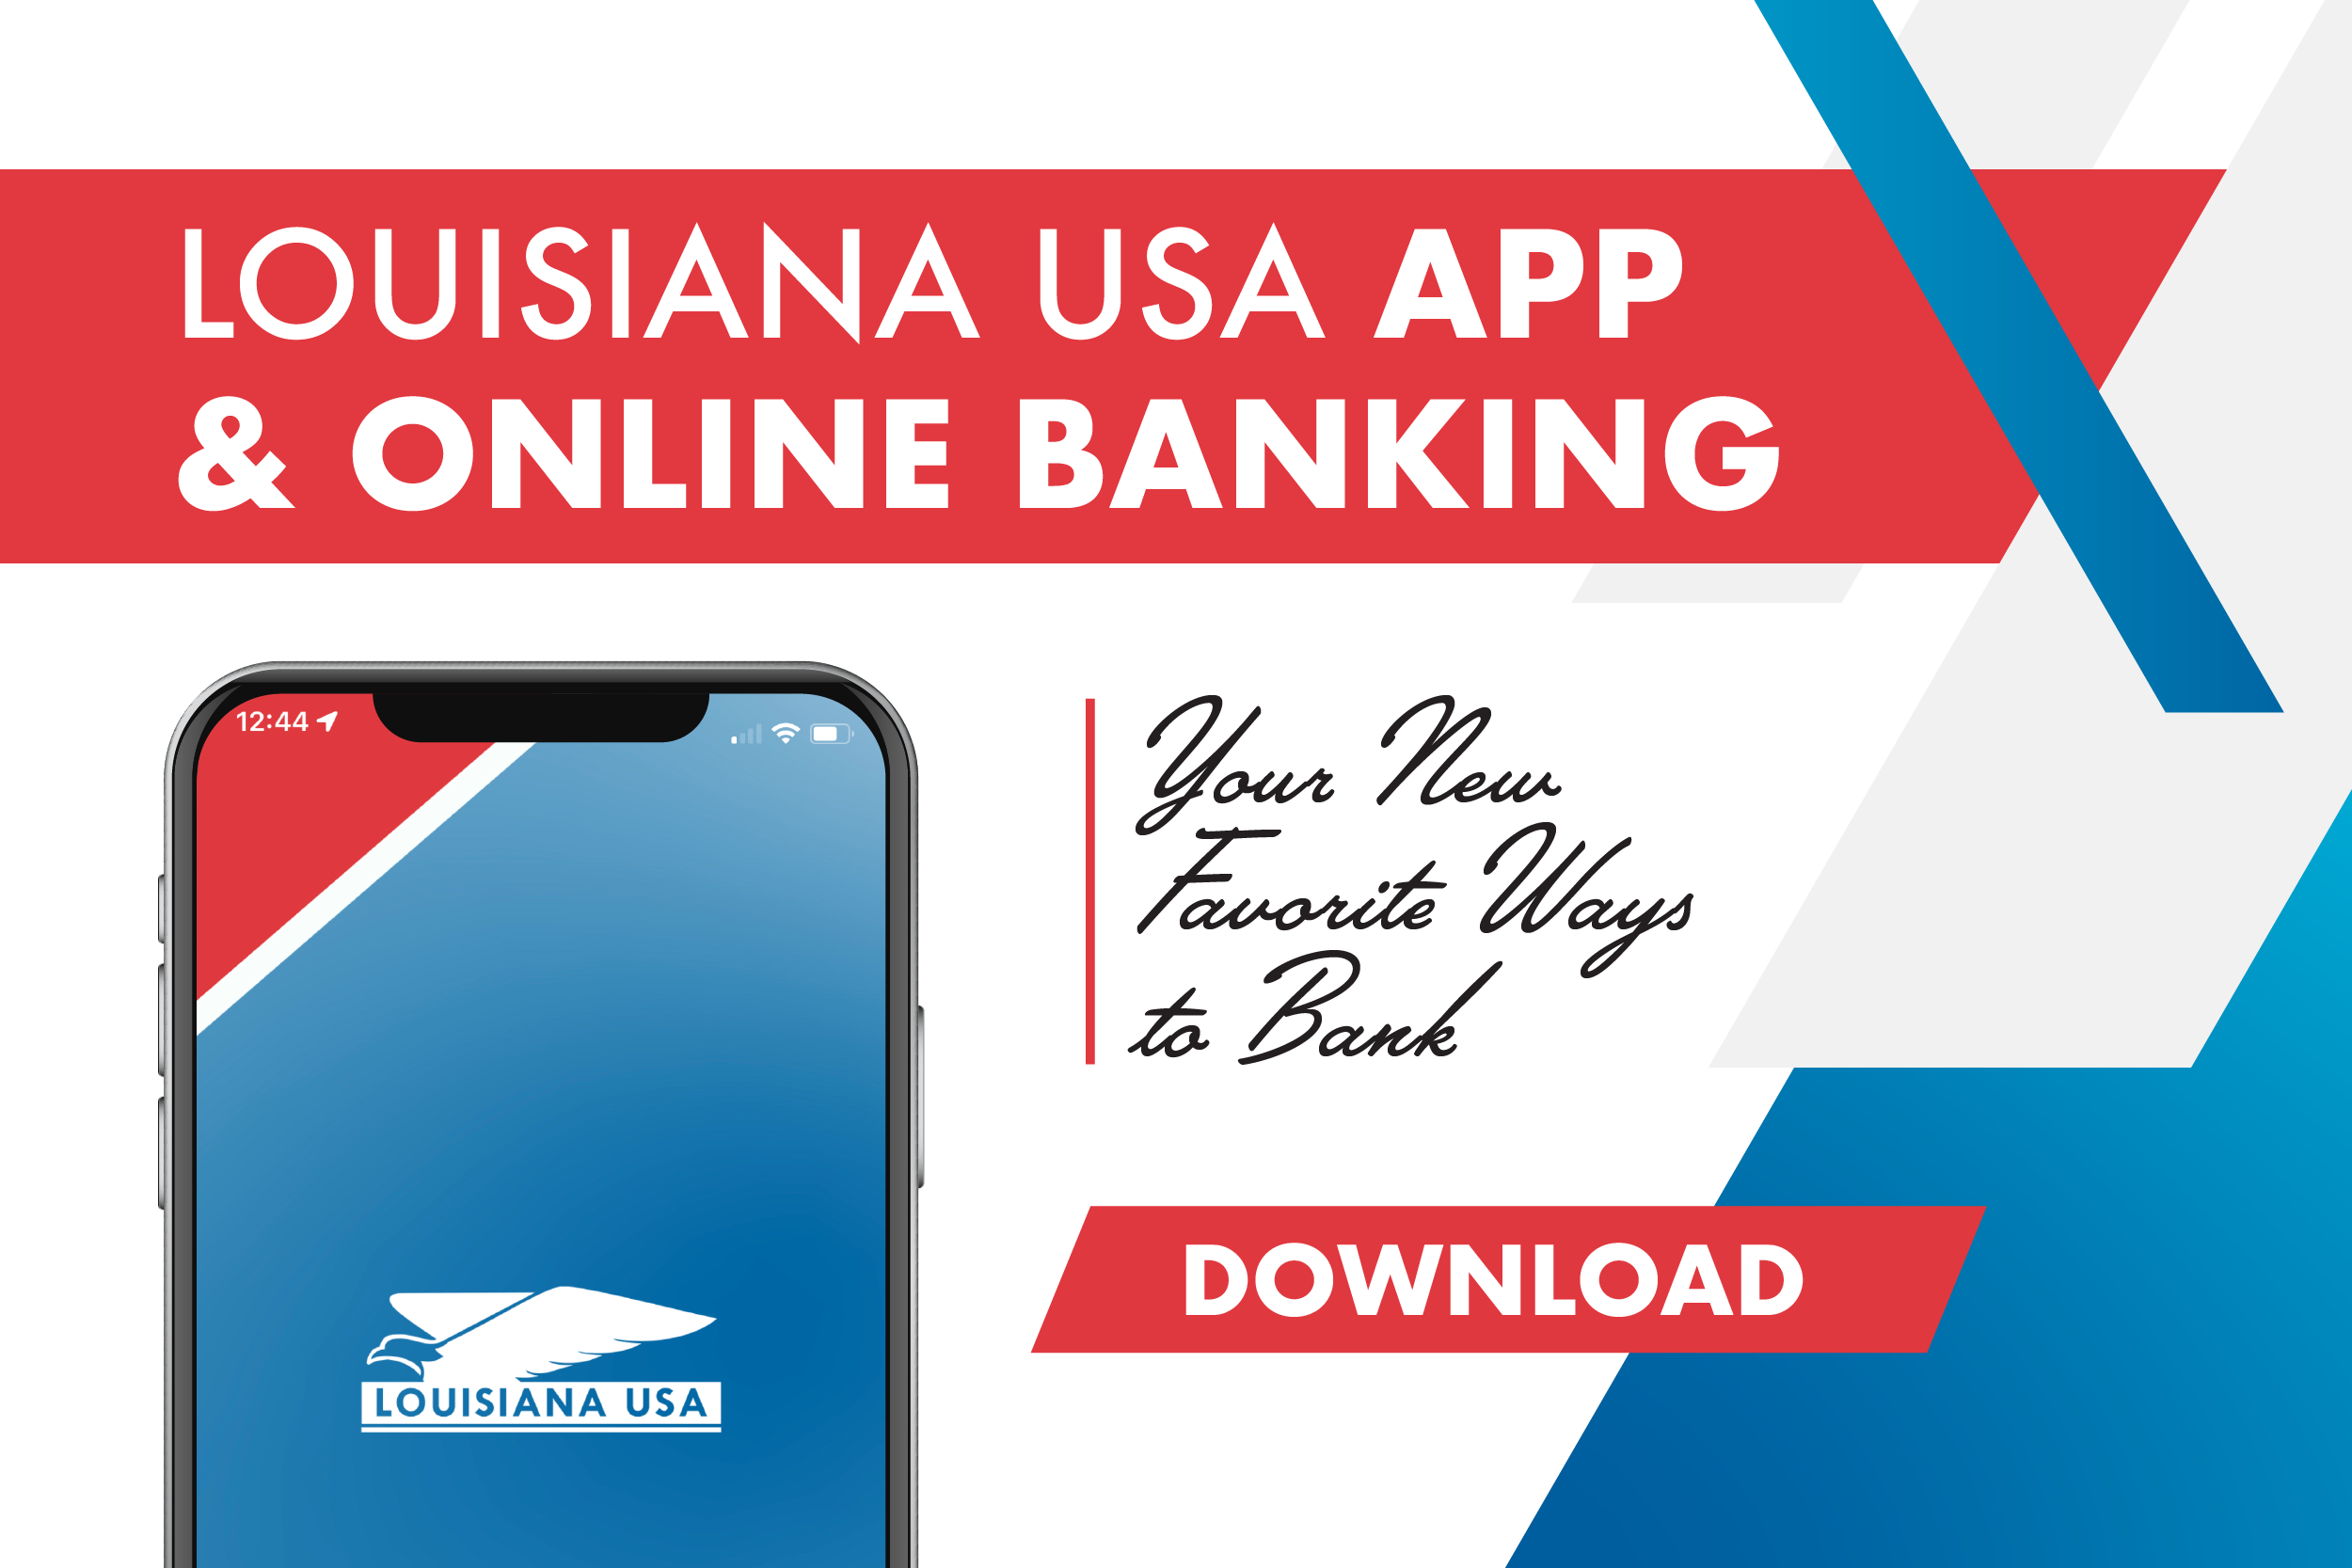 Louisiana USA App & Online